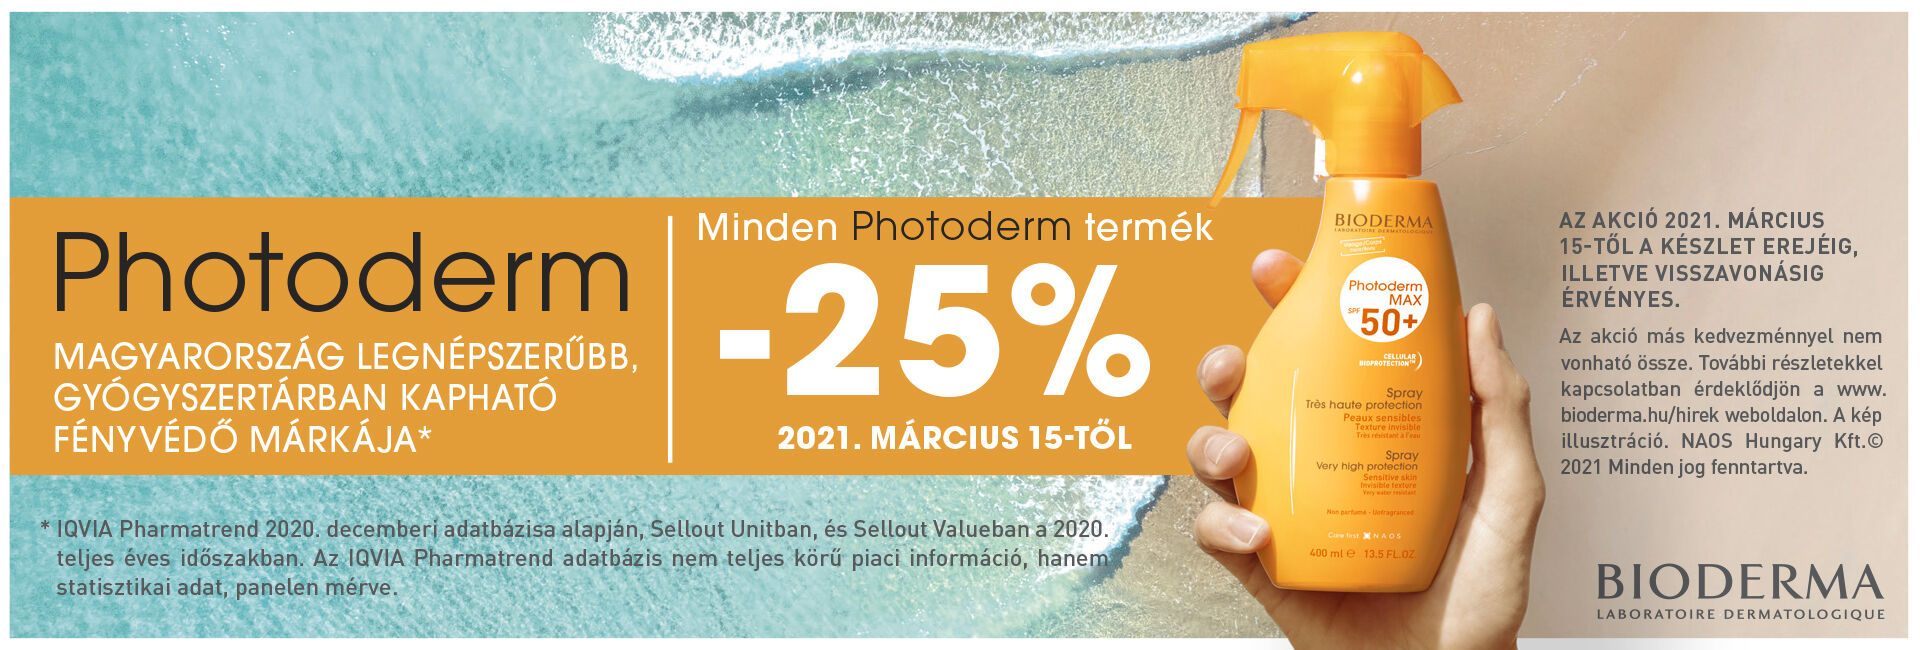 2021. július 22-31. között 25% kedvezménnyel kínáljuk a Bioderma Photoderm termékeket!